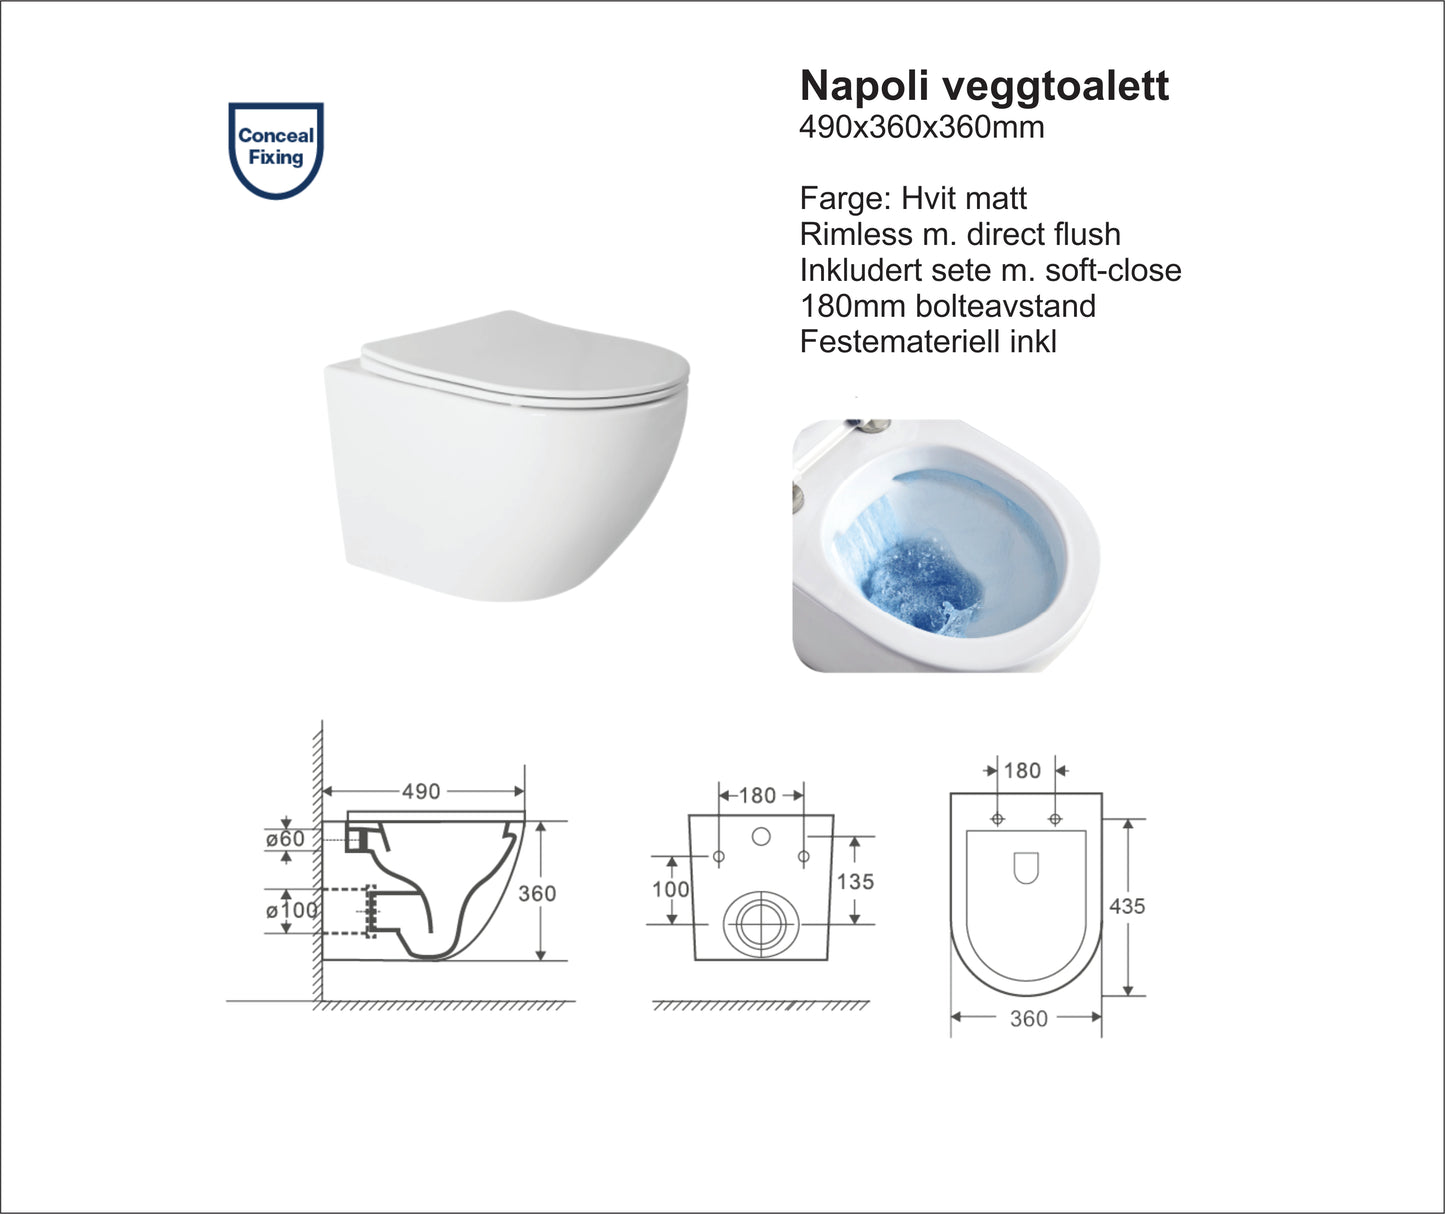 Napoli hvit matt toalettpakke, veggskål, softclose sete og sisterne med safetybag